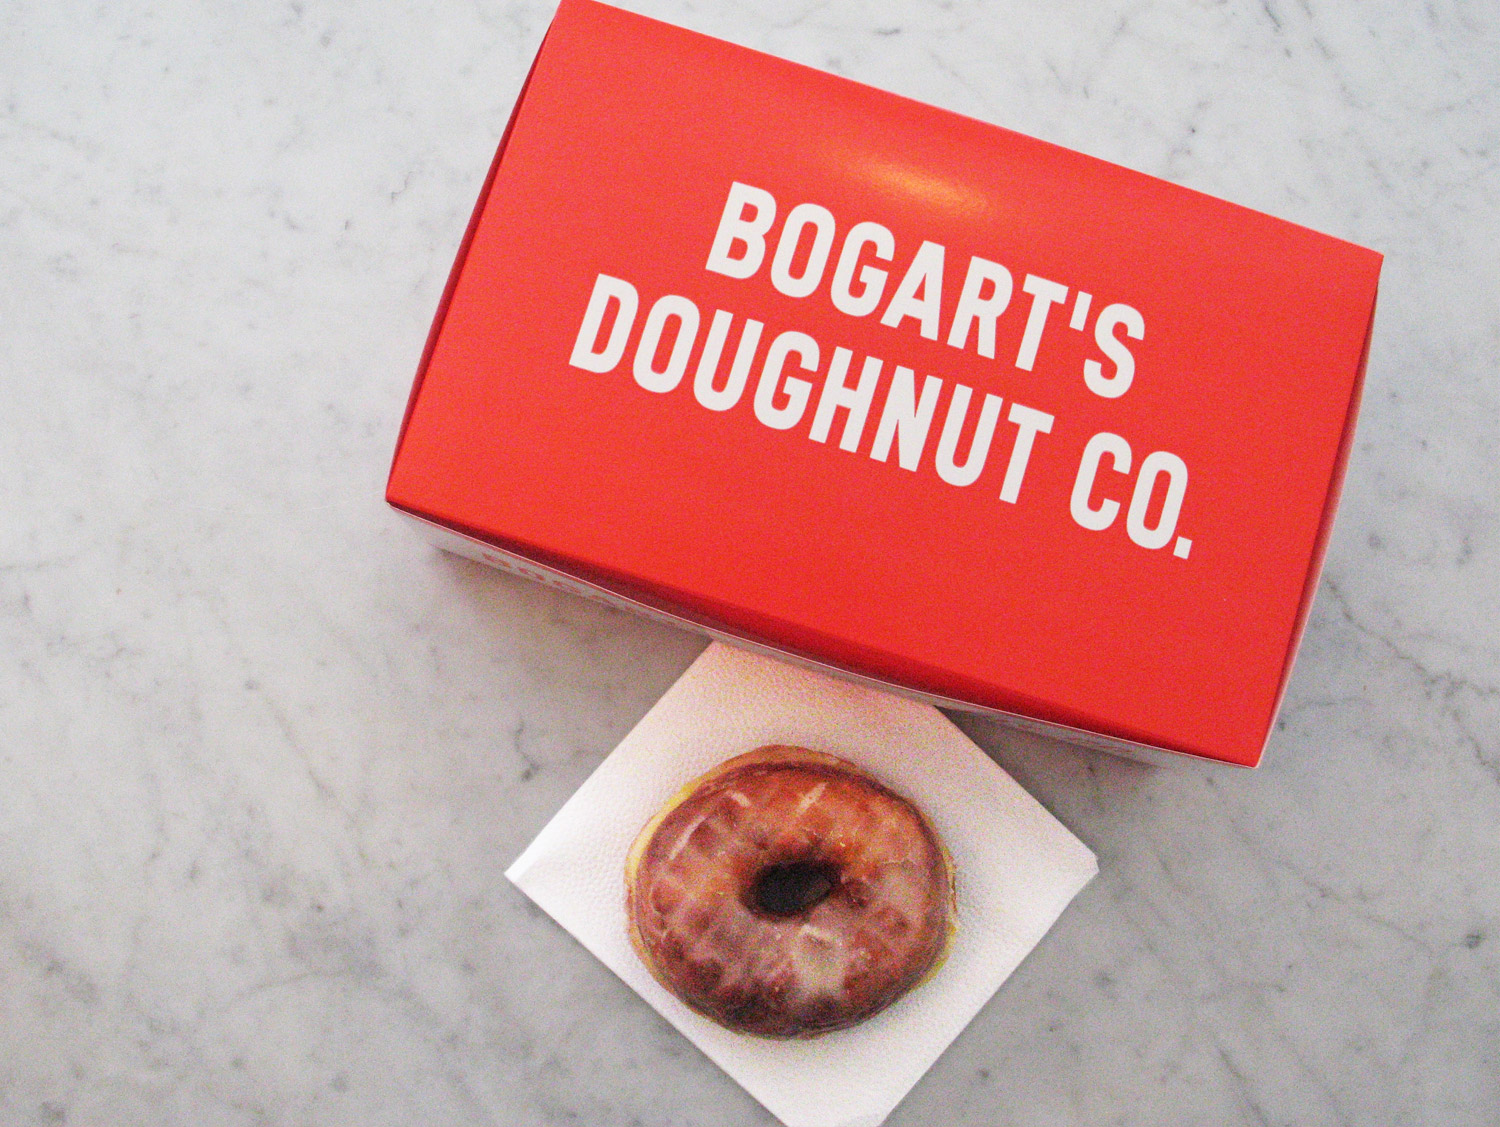 Bogarts-Doughnut-Co-07.jpg